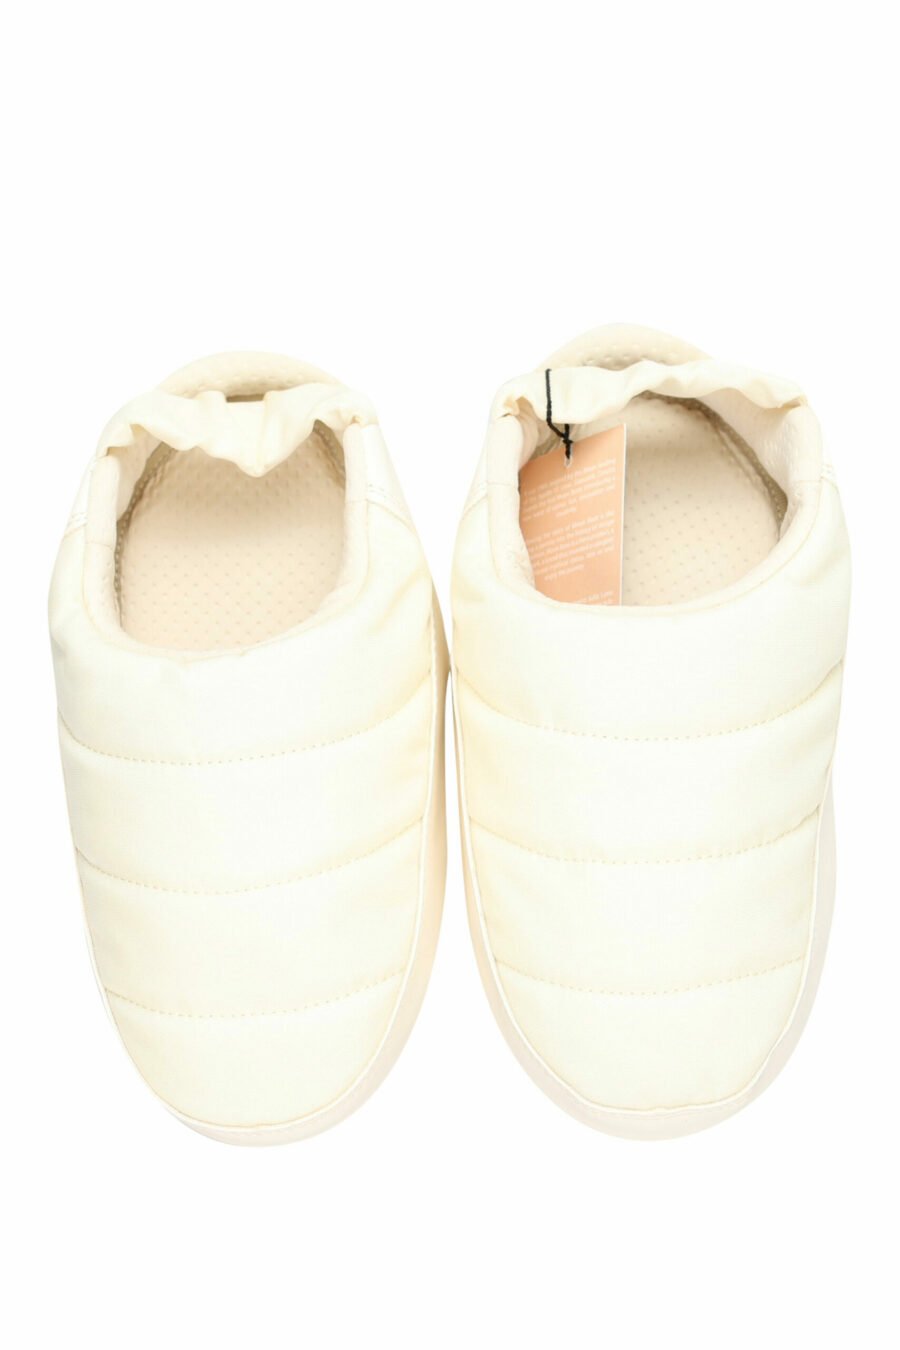 Sandales blanches avec mini-logo blanc - 8050032004080 5 échelles